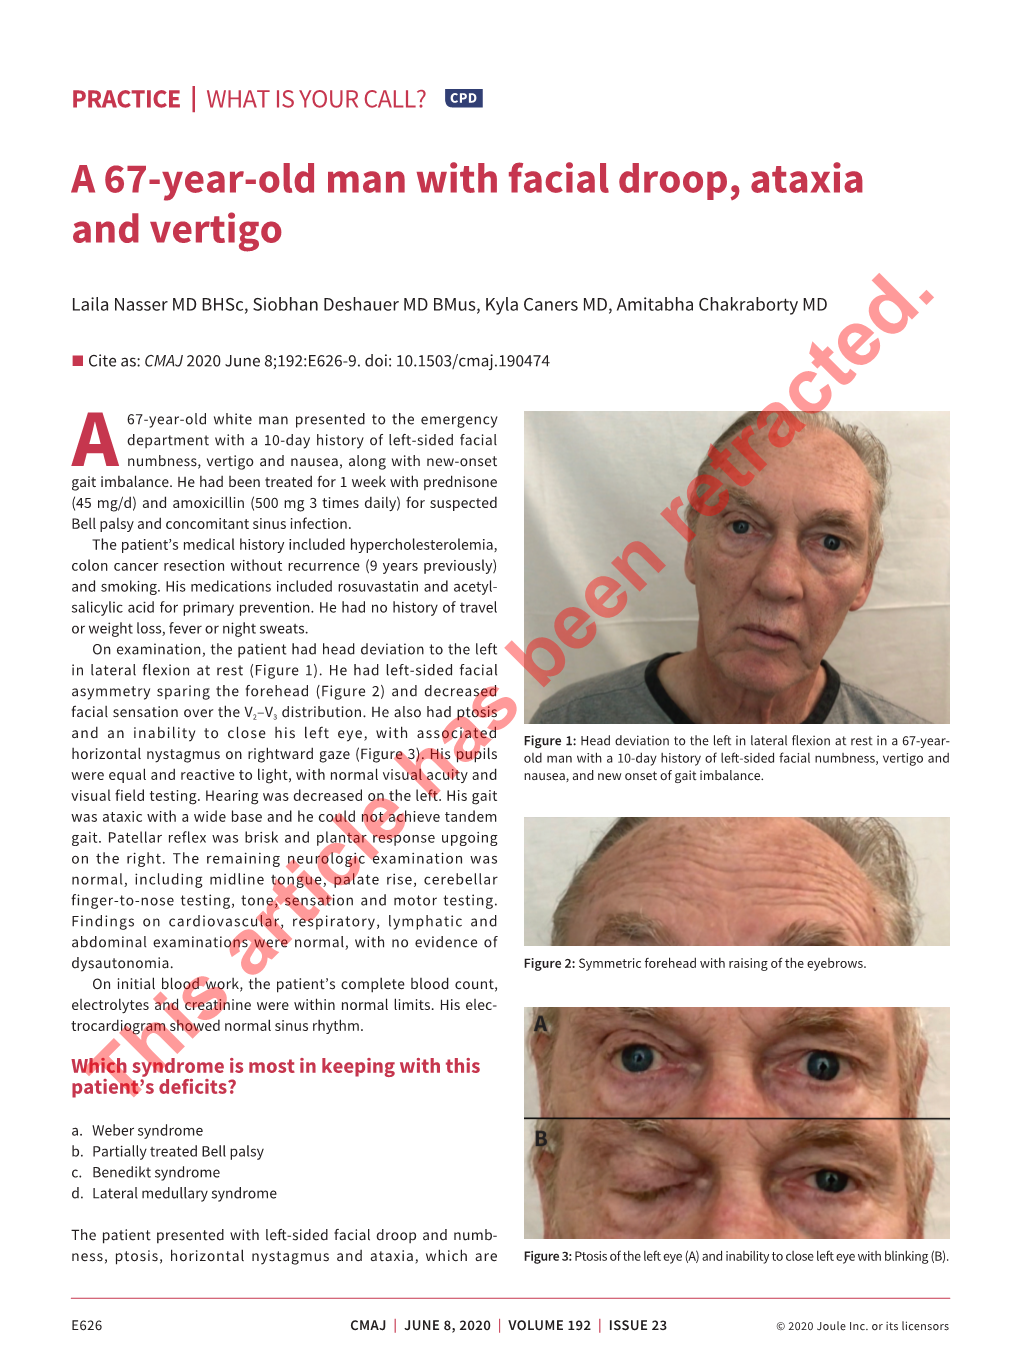 A 67-Year-Old Man with Facial Droop, Ataxia and Vertigo